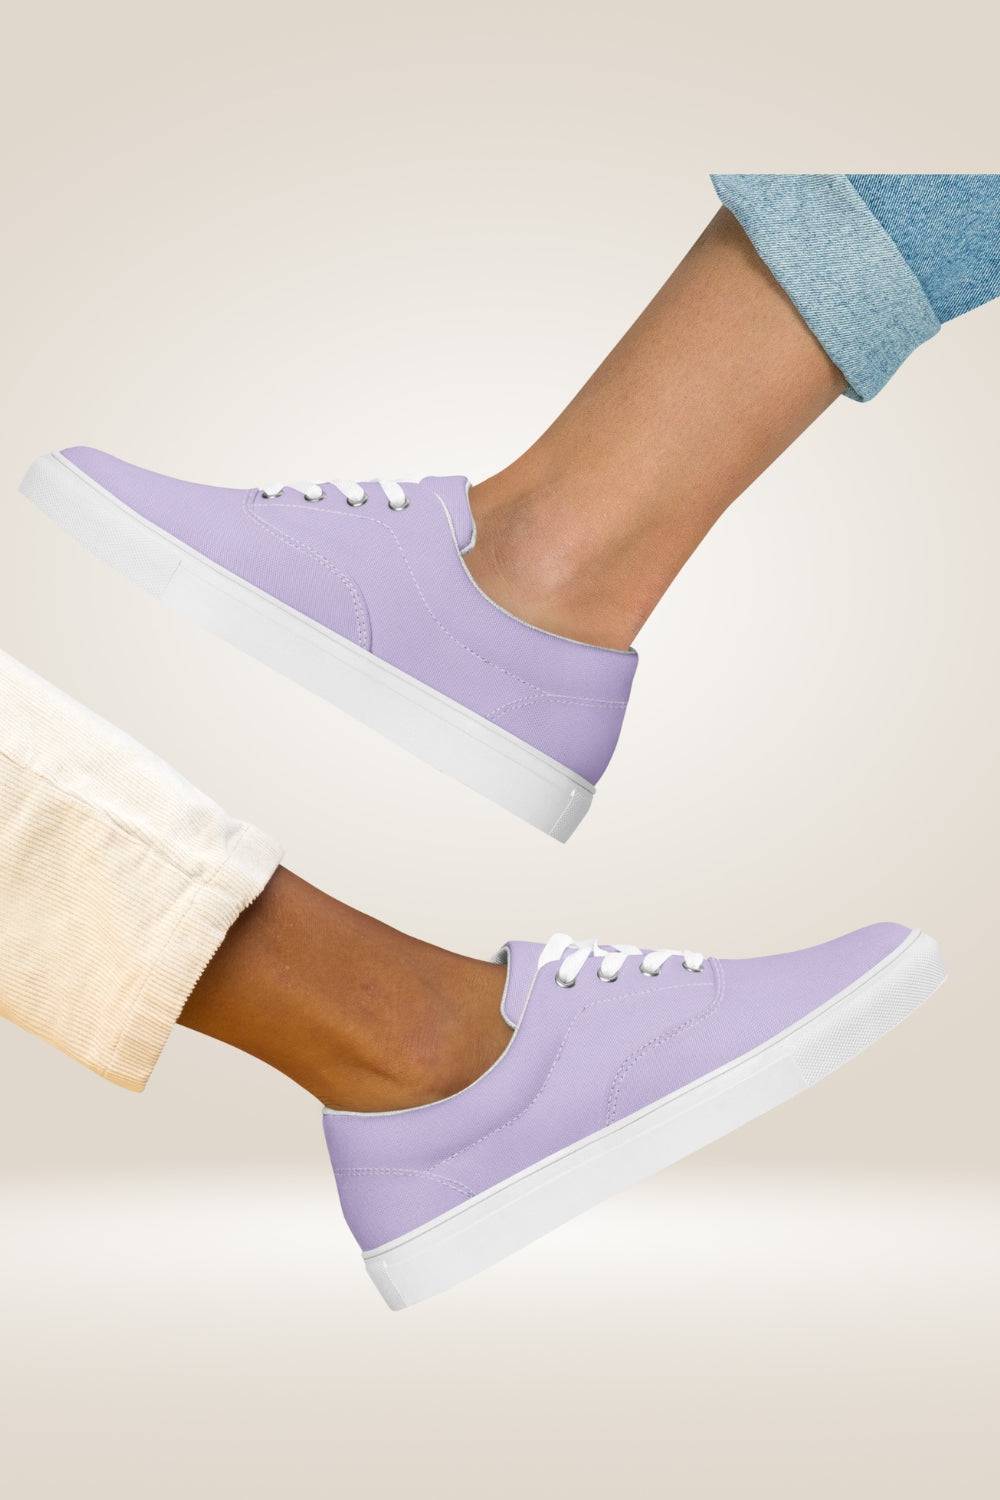 Light Purple Lace Up Canvas Shoes - TGC Boutique - Sneakers